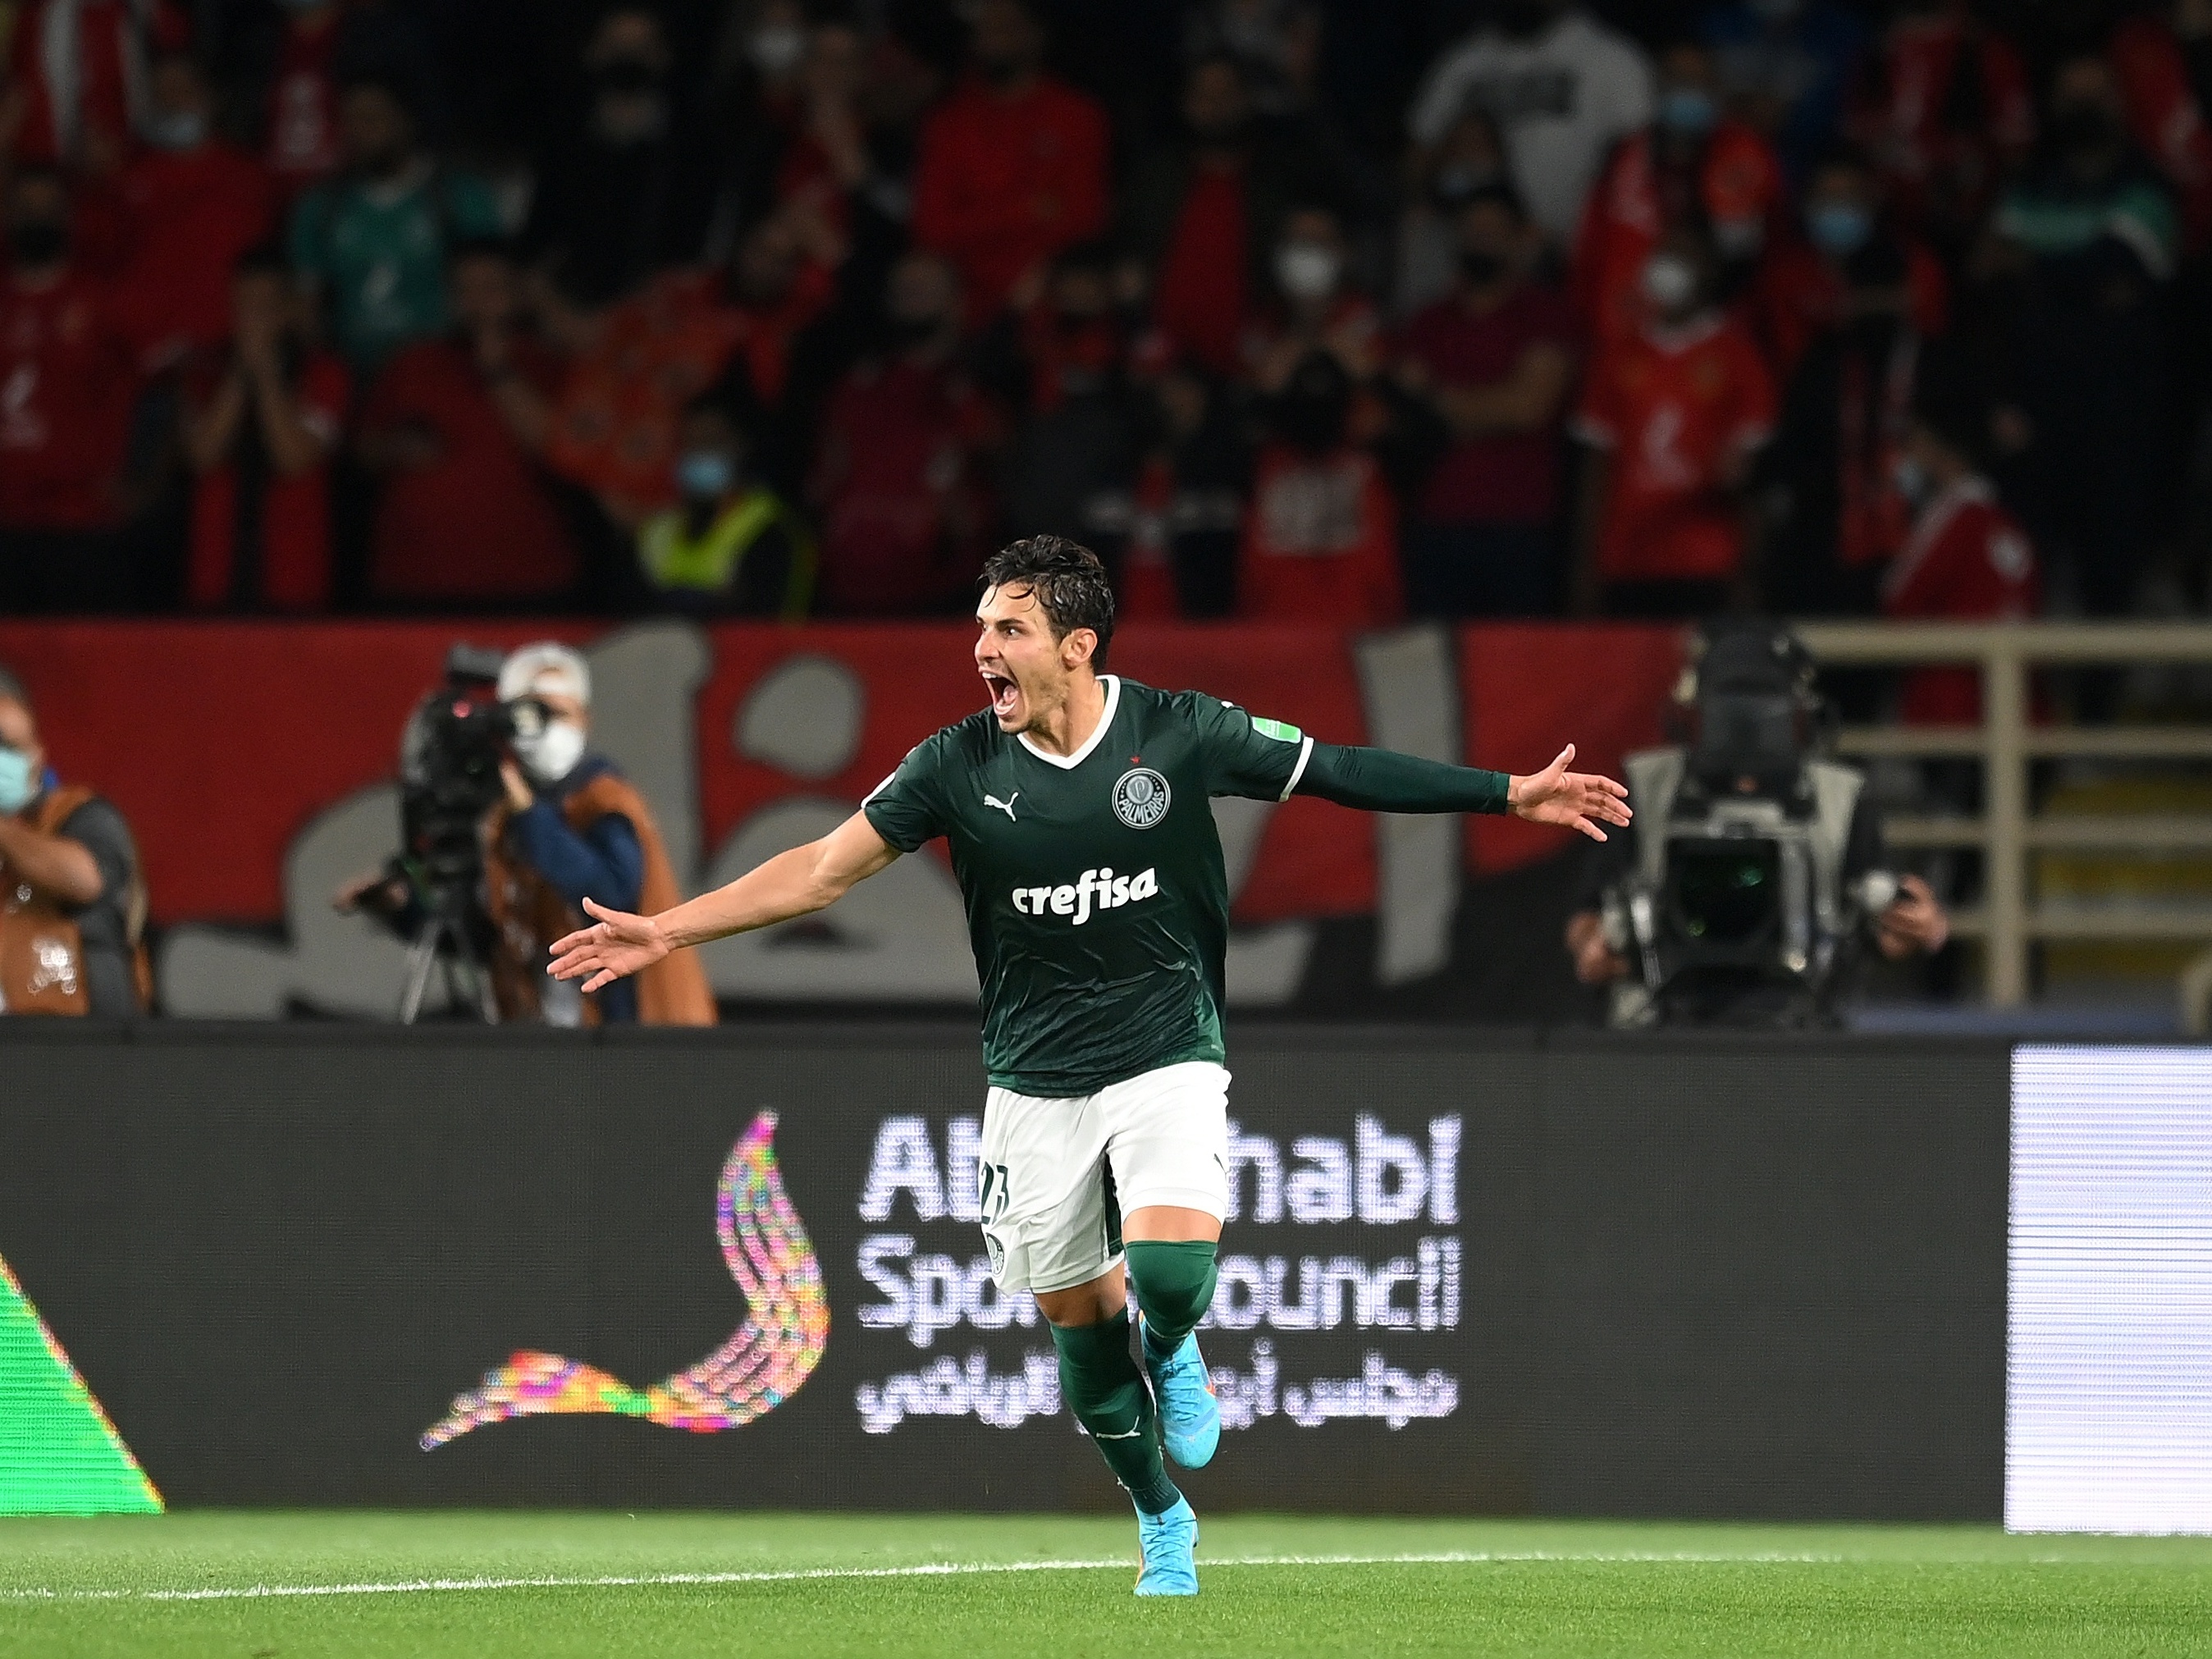 Após frustração em 2021, Palmeiras encara Al Ahly na semifinal do Mundial -  Superesportes